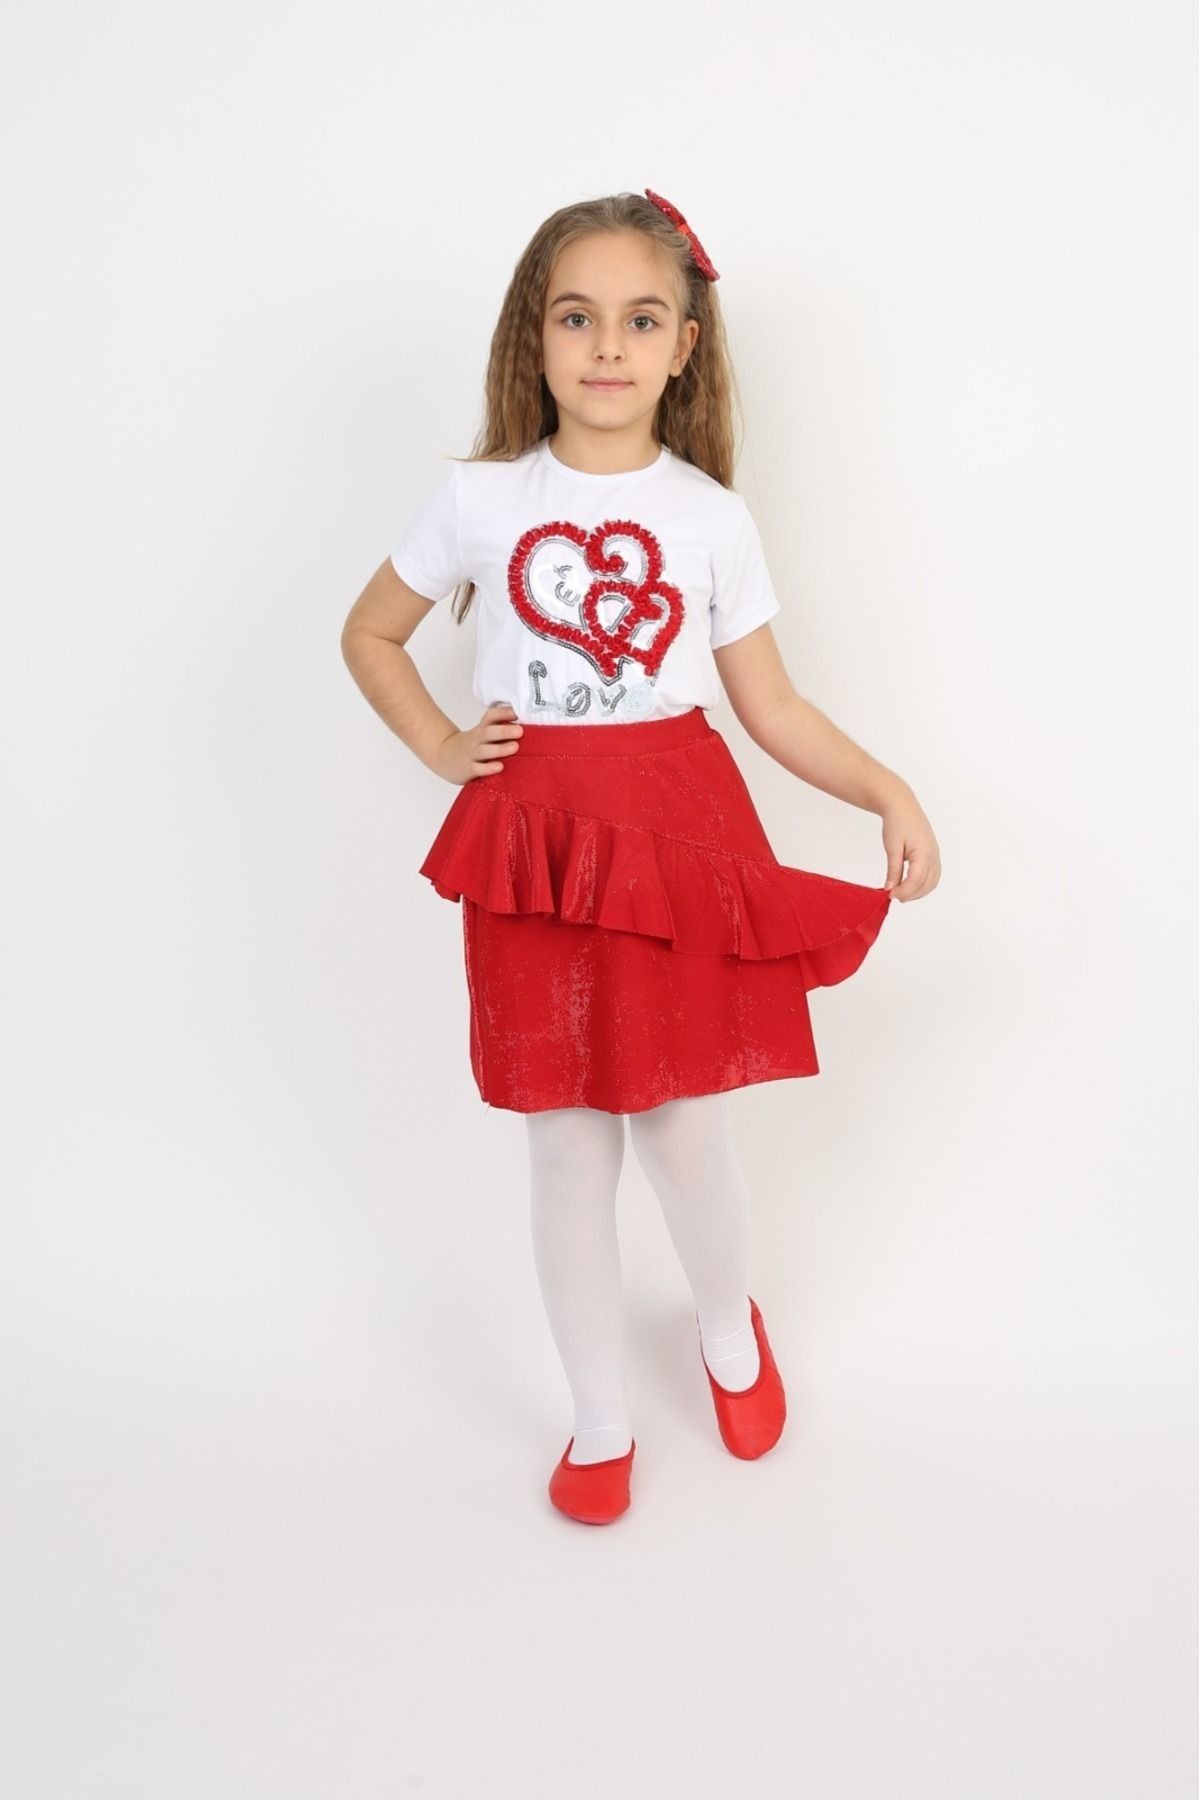 Haba Kız Çocuk Takım Love Kalp Badi Saçaklı Kırmızı Etek 23 Nisan Gösteri Kostüm Doğum Günü Kıyafeti